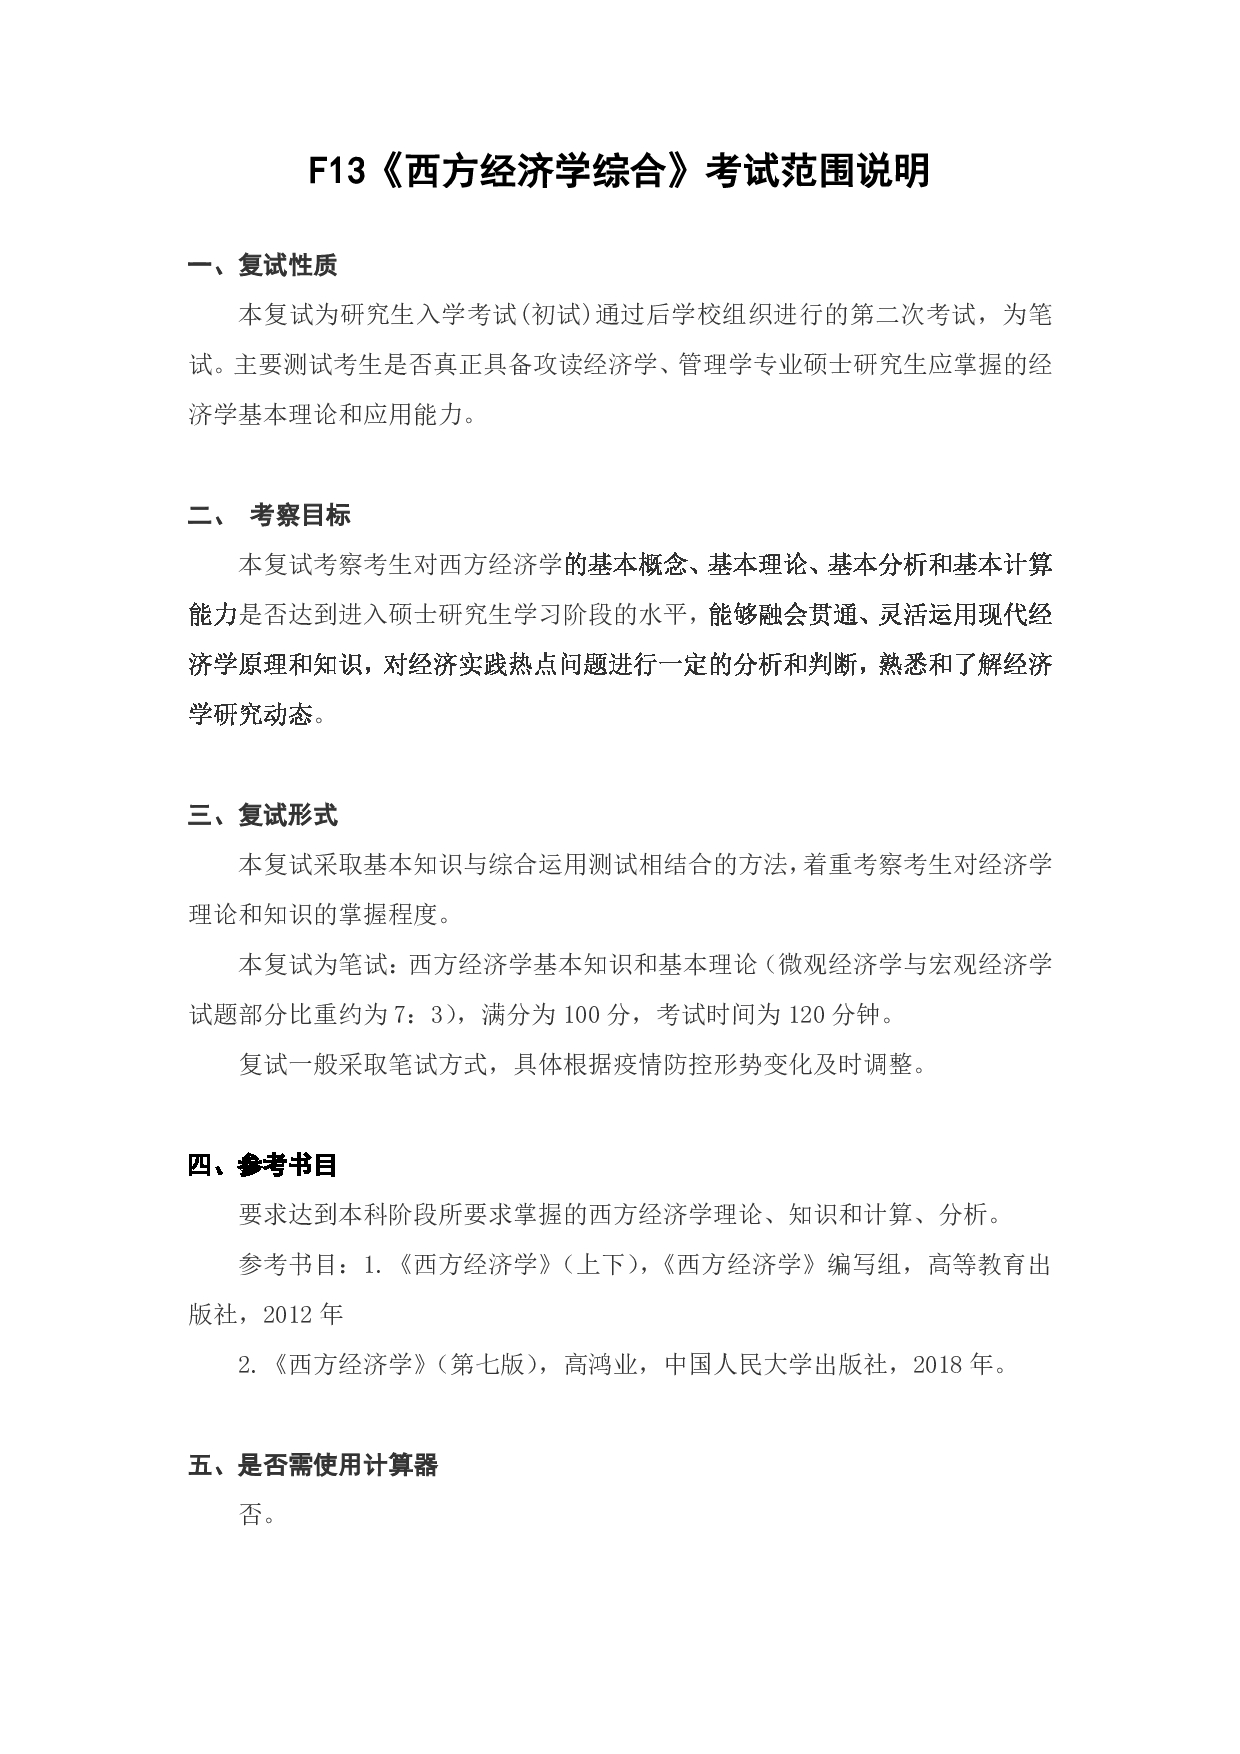 上海海洋大学2023年考研自命题科目 F13《西方经济学综合》 考试范围第1页